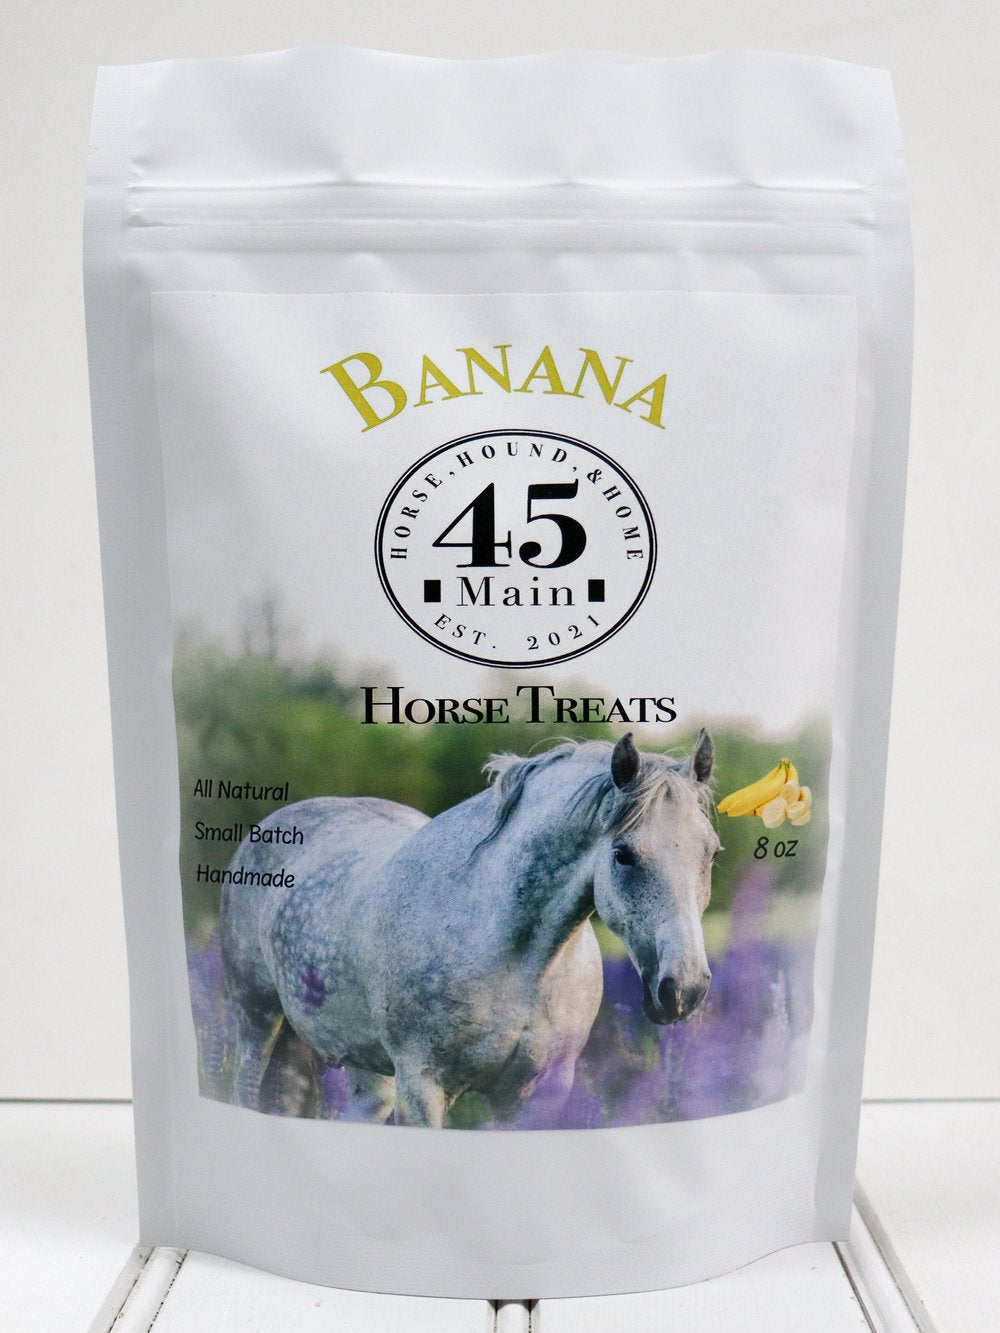 45 Main Horse Treats Banana